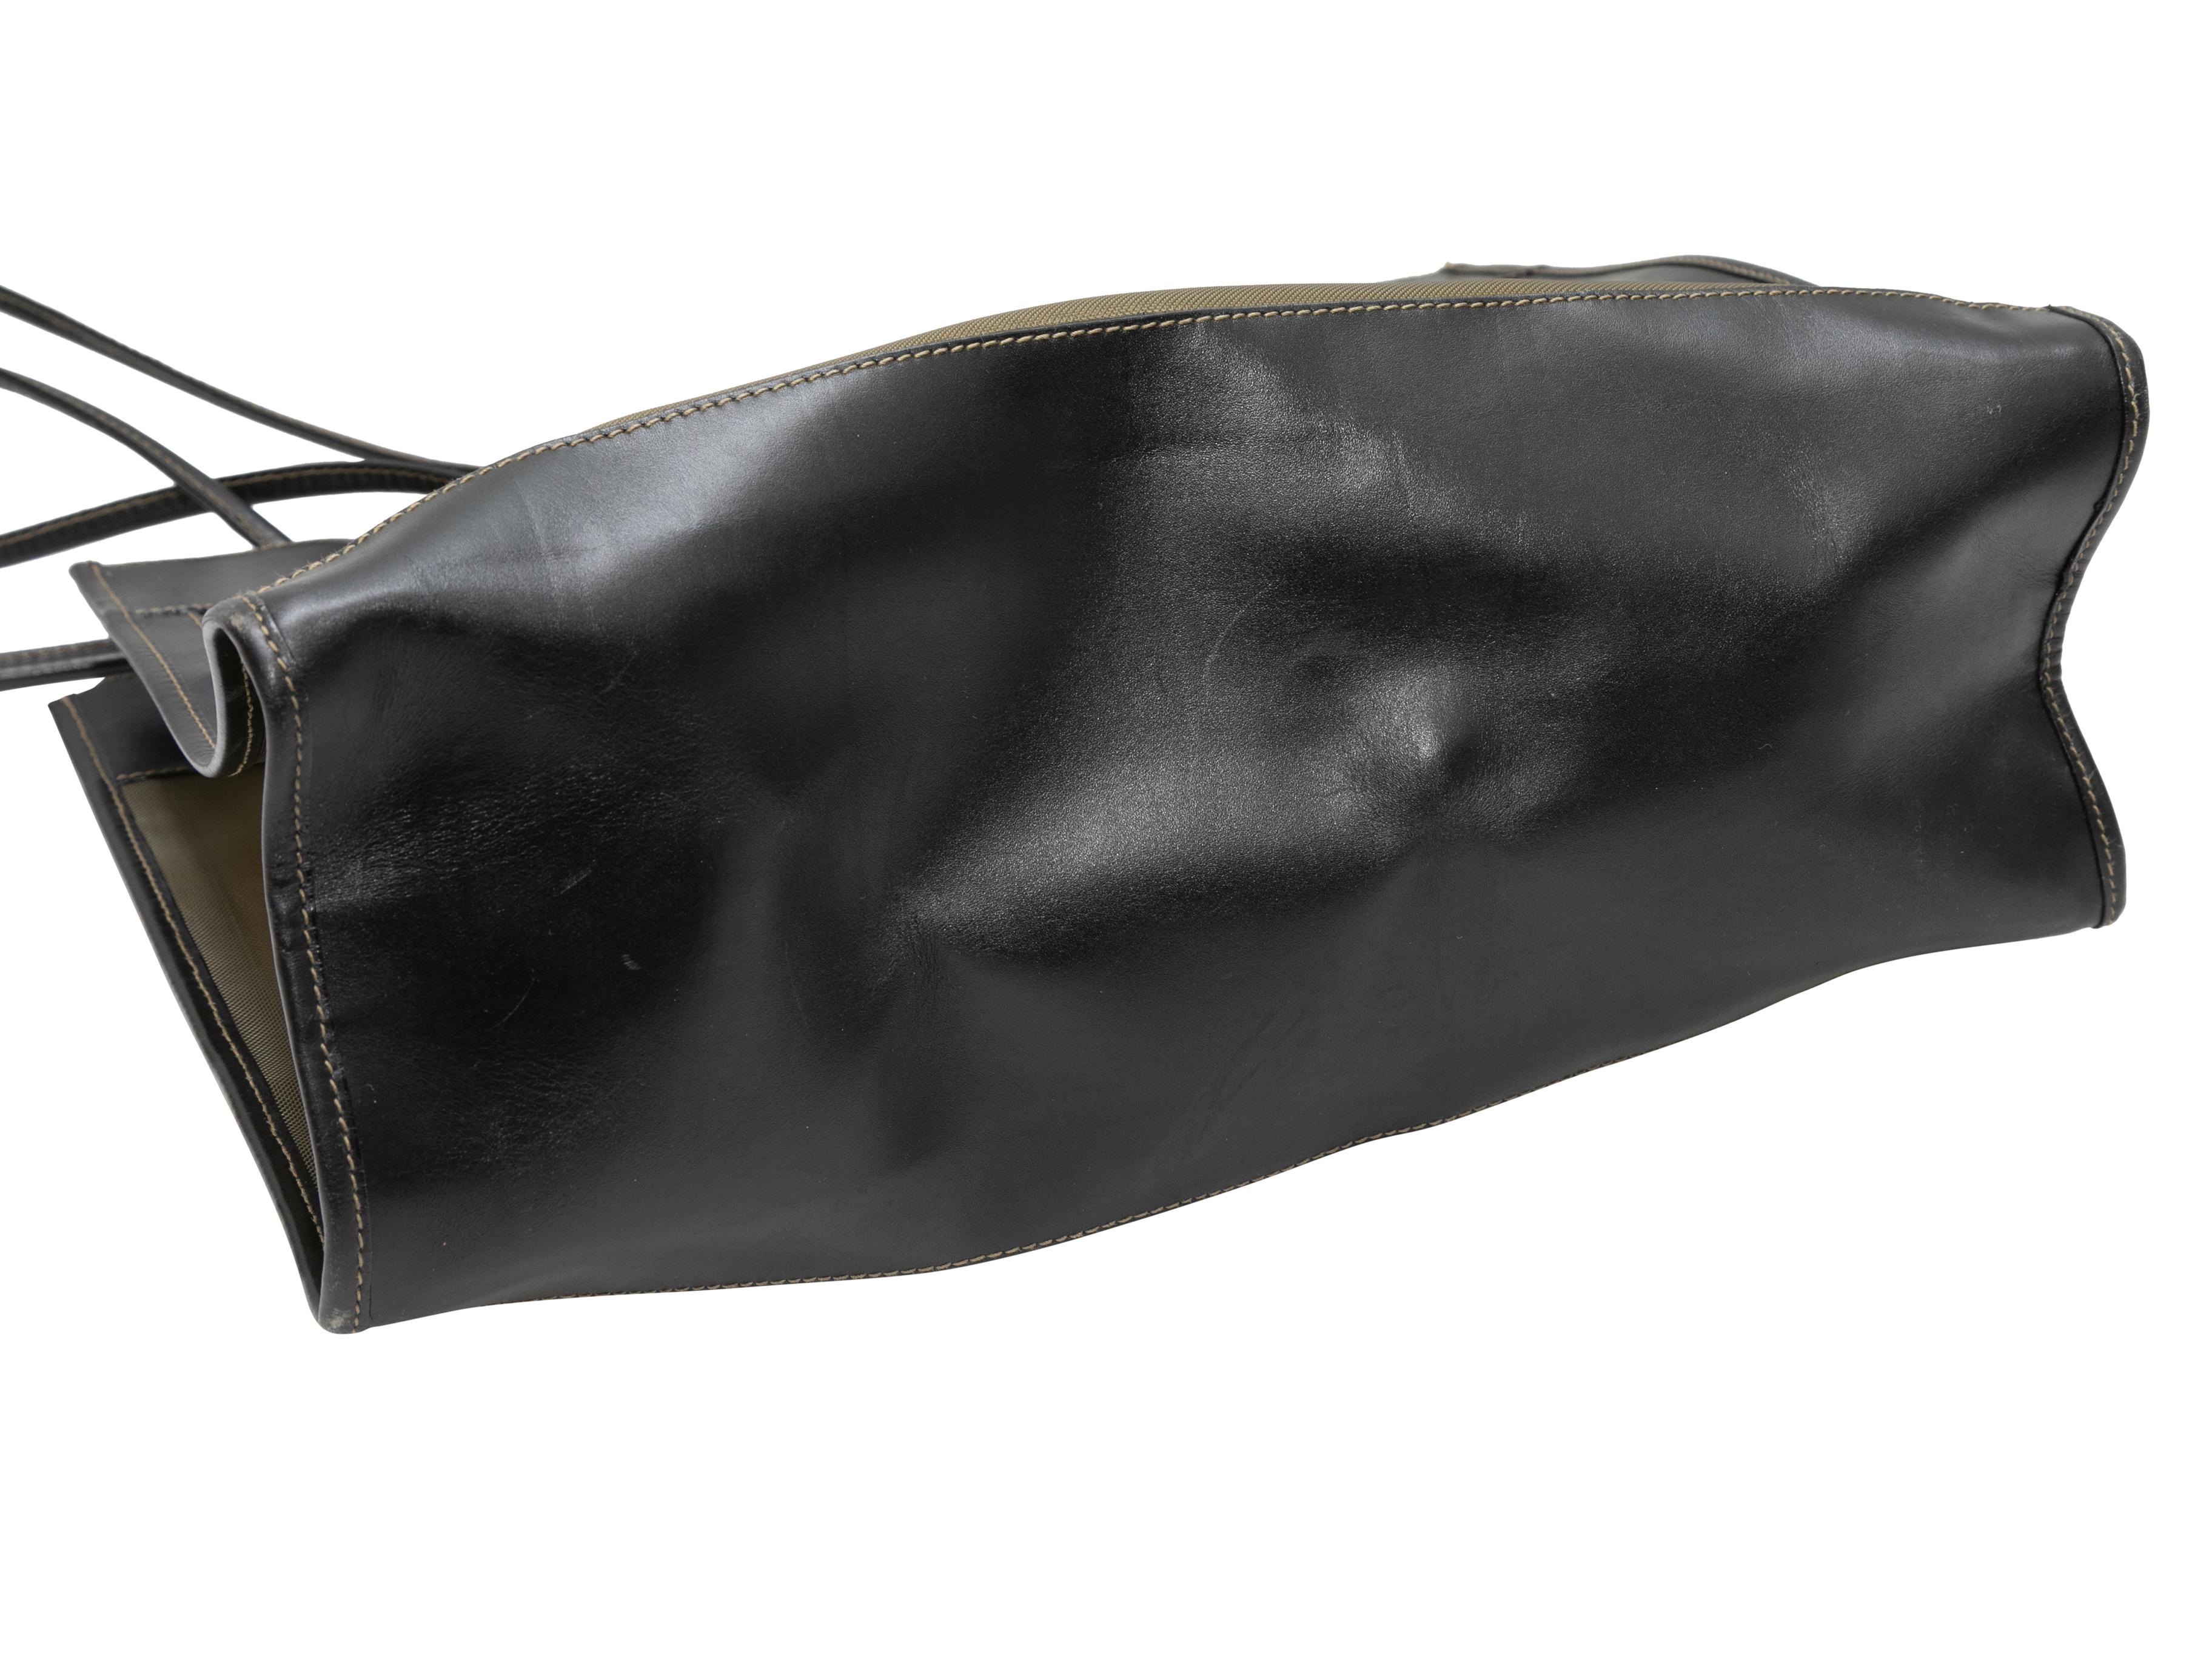 Vintage Black & Gold Fendi Mesh & Leather Tote Bag. Ce sac fourre-tout est doté d'un corps en cuir et en maille, d'une quincaillerie dorée et de deux bandoulières roulées. 14